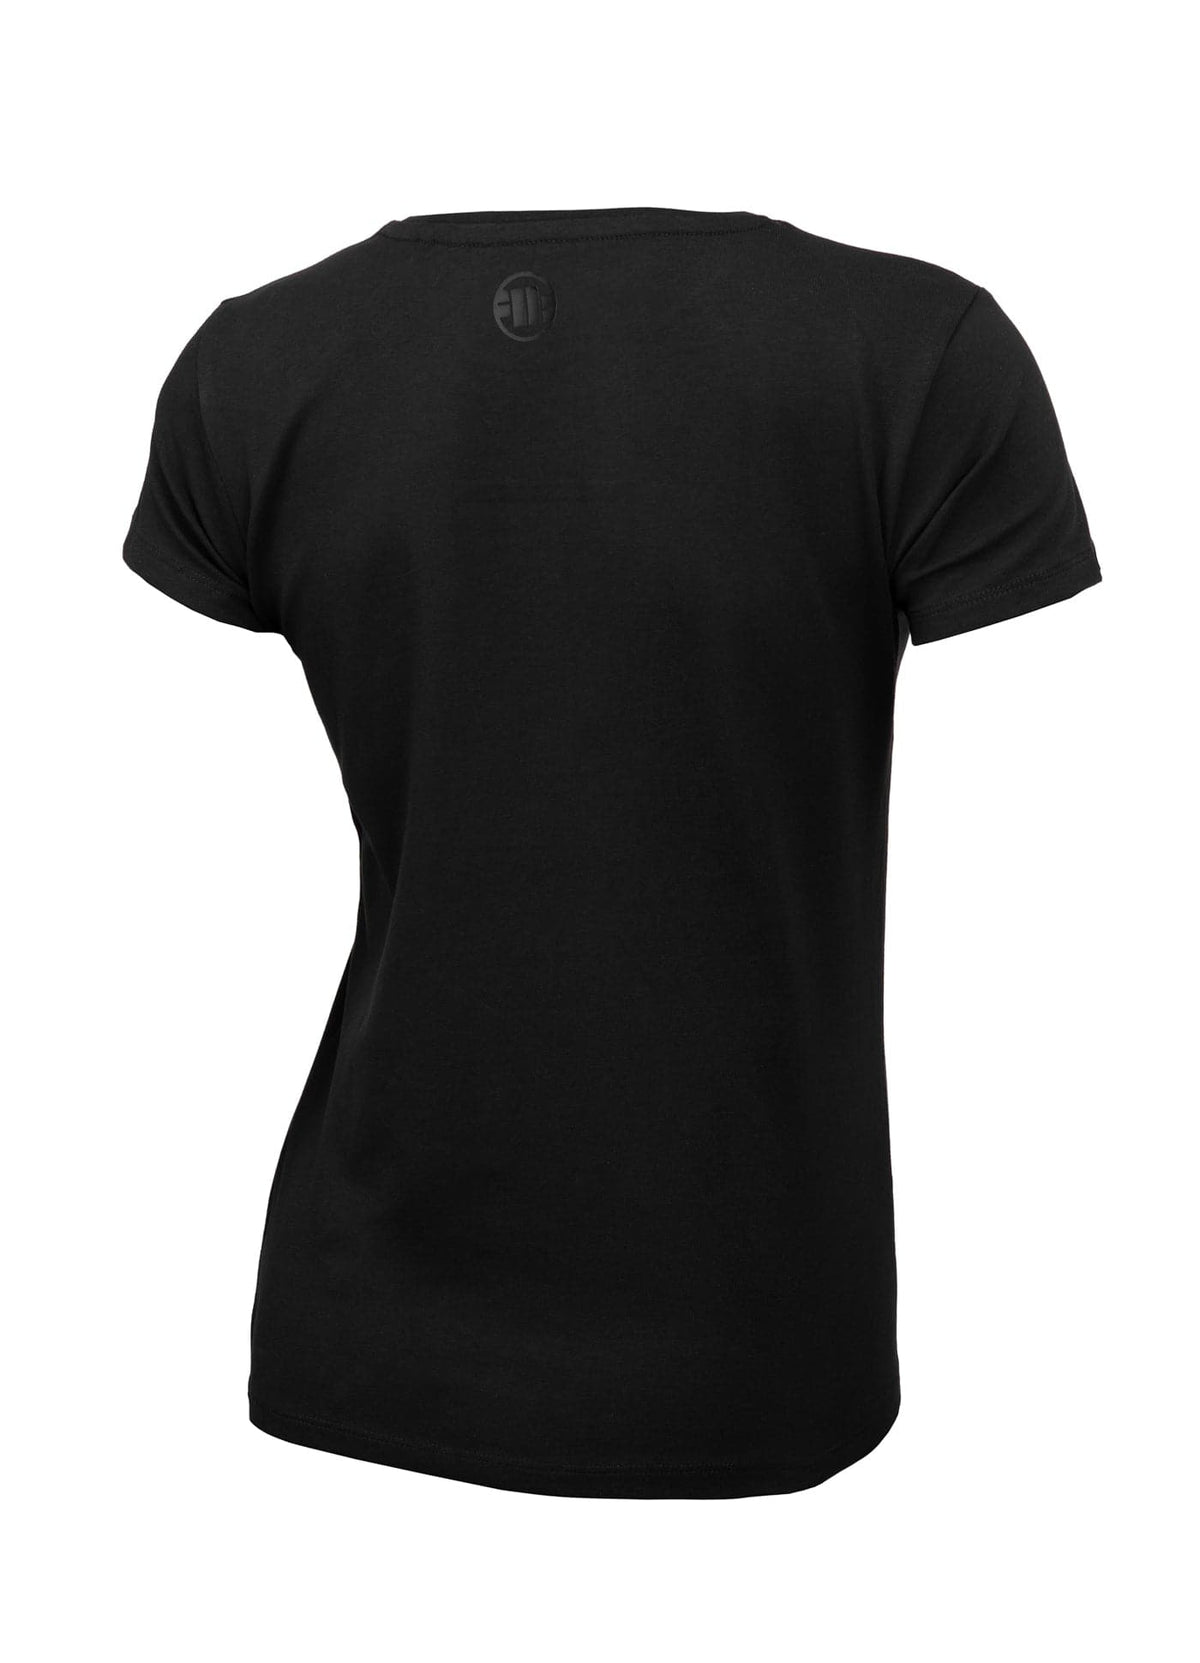 Koszulka Slim Fit PITBULL R 190 Czarna - kup z Pitbull West Coast Oficjalny Sklep 